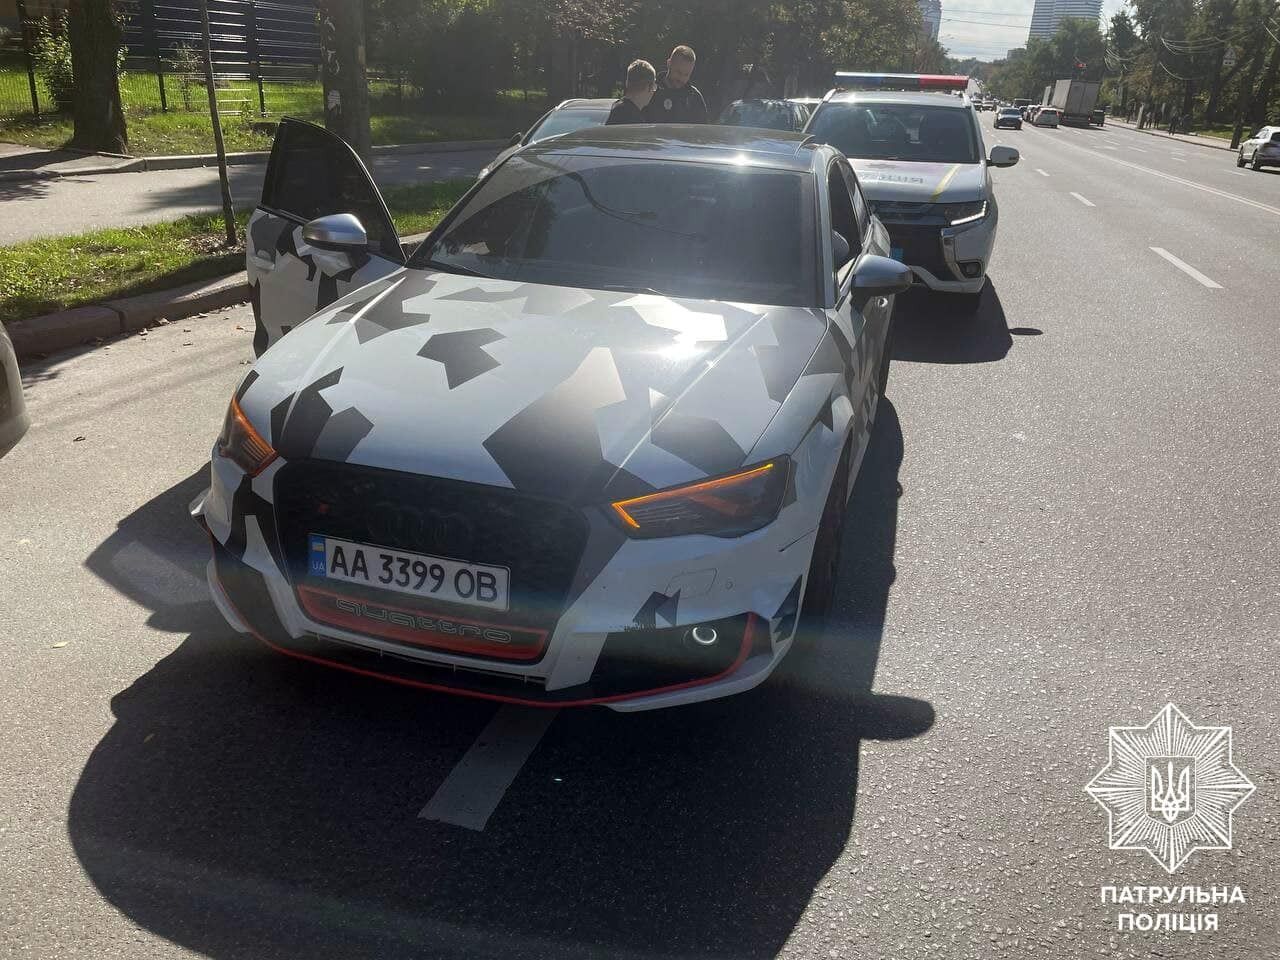 Білошицький показав, як поліцейські штрафують "за форсаж" у столиці: у деяких авто по 9 порушень